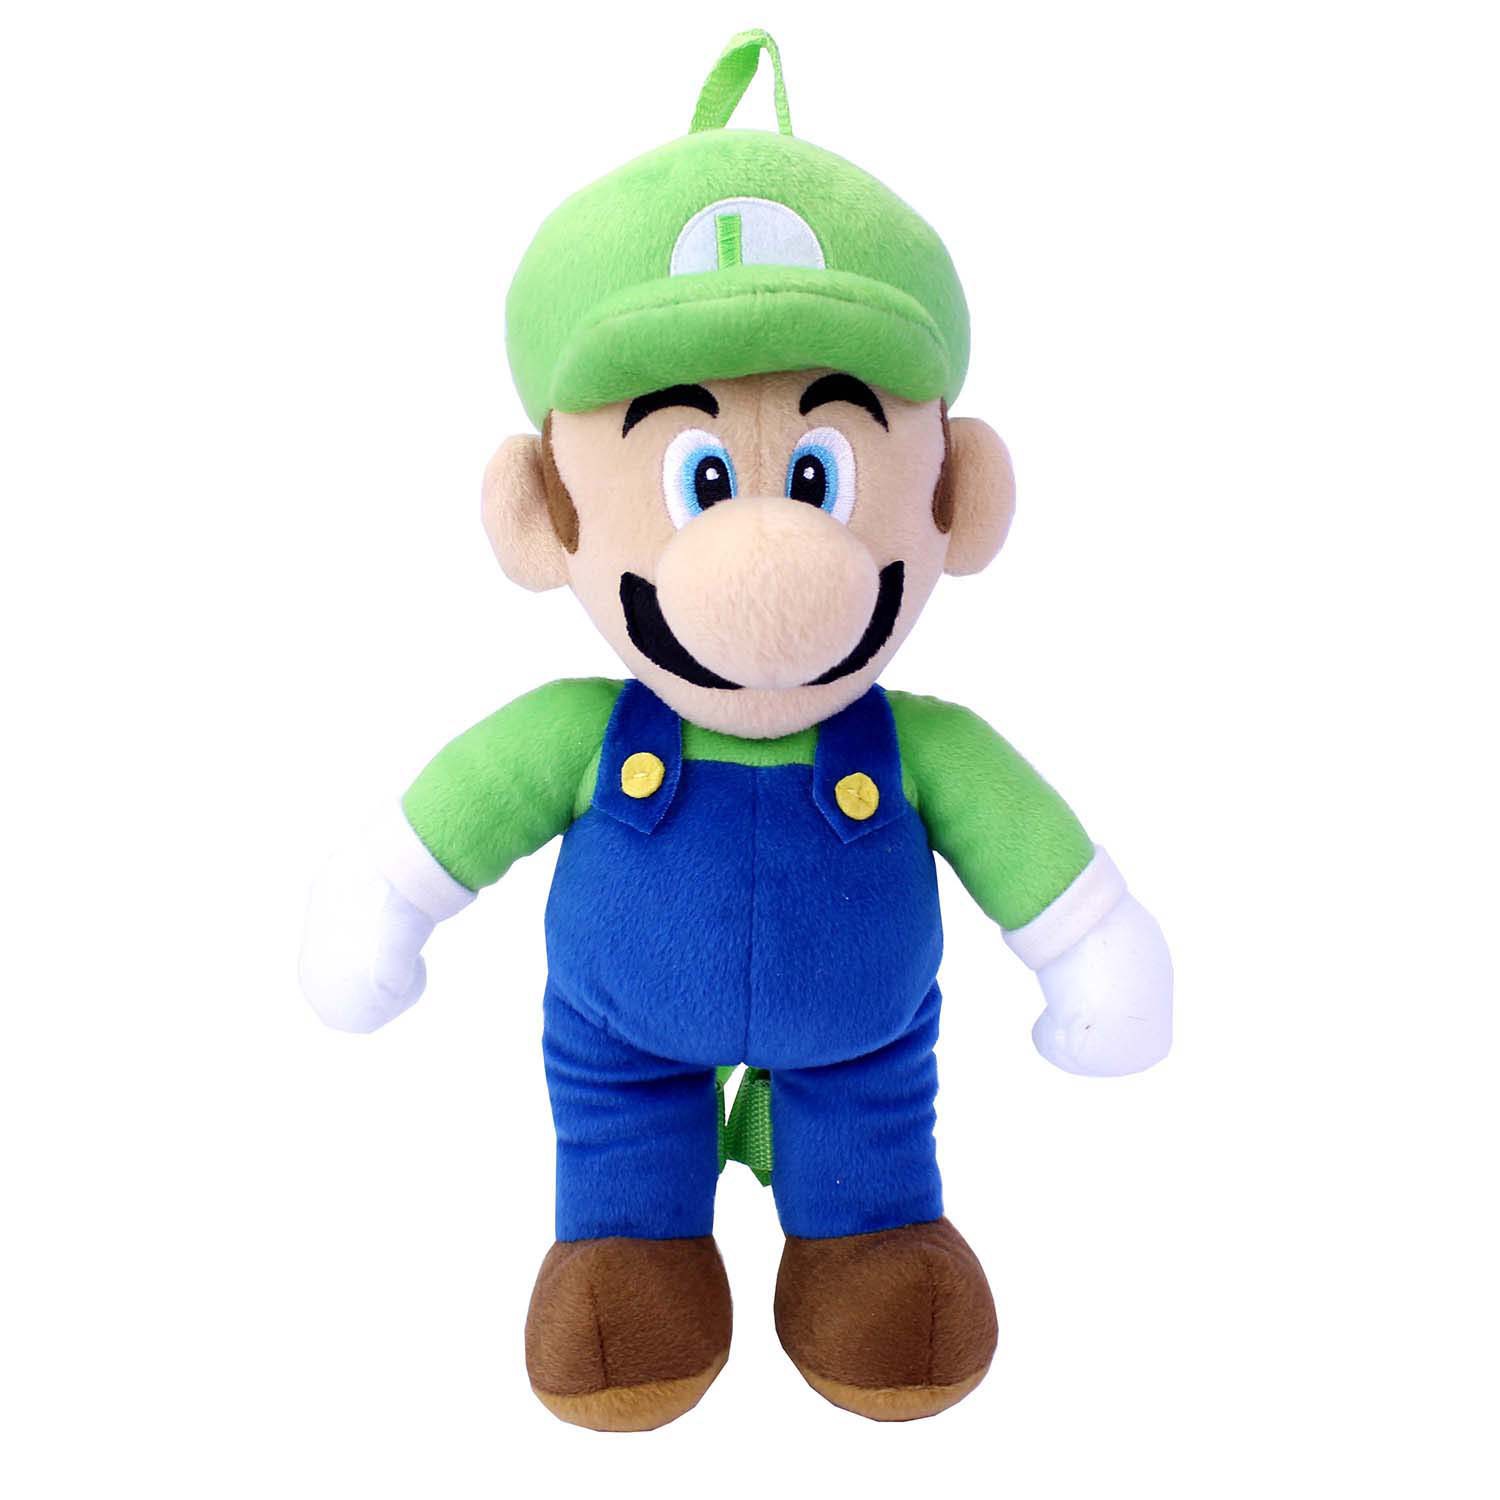 Super Mario Bros. Luigi Plush Backpack